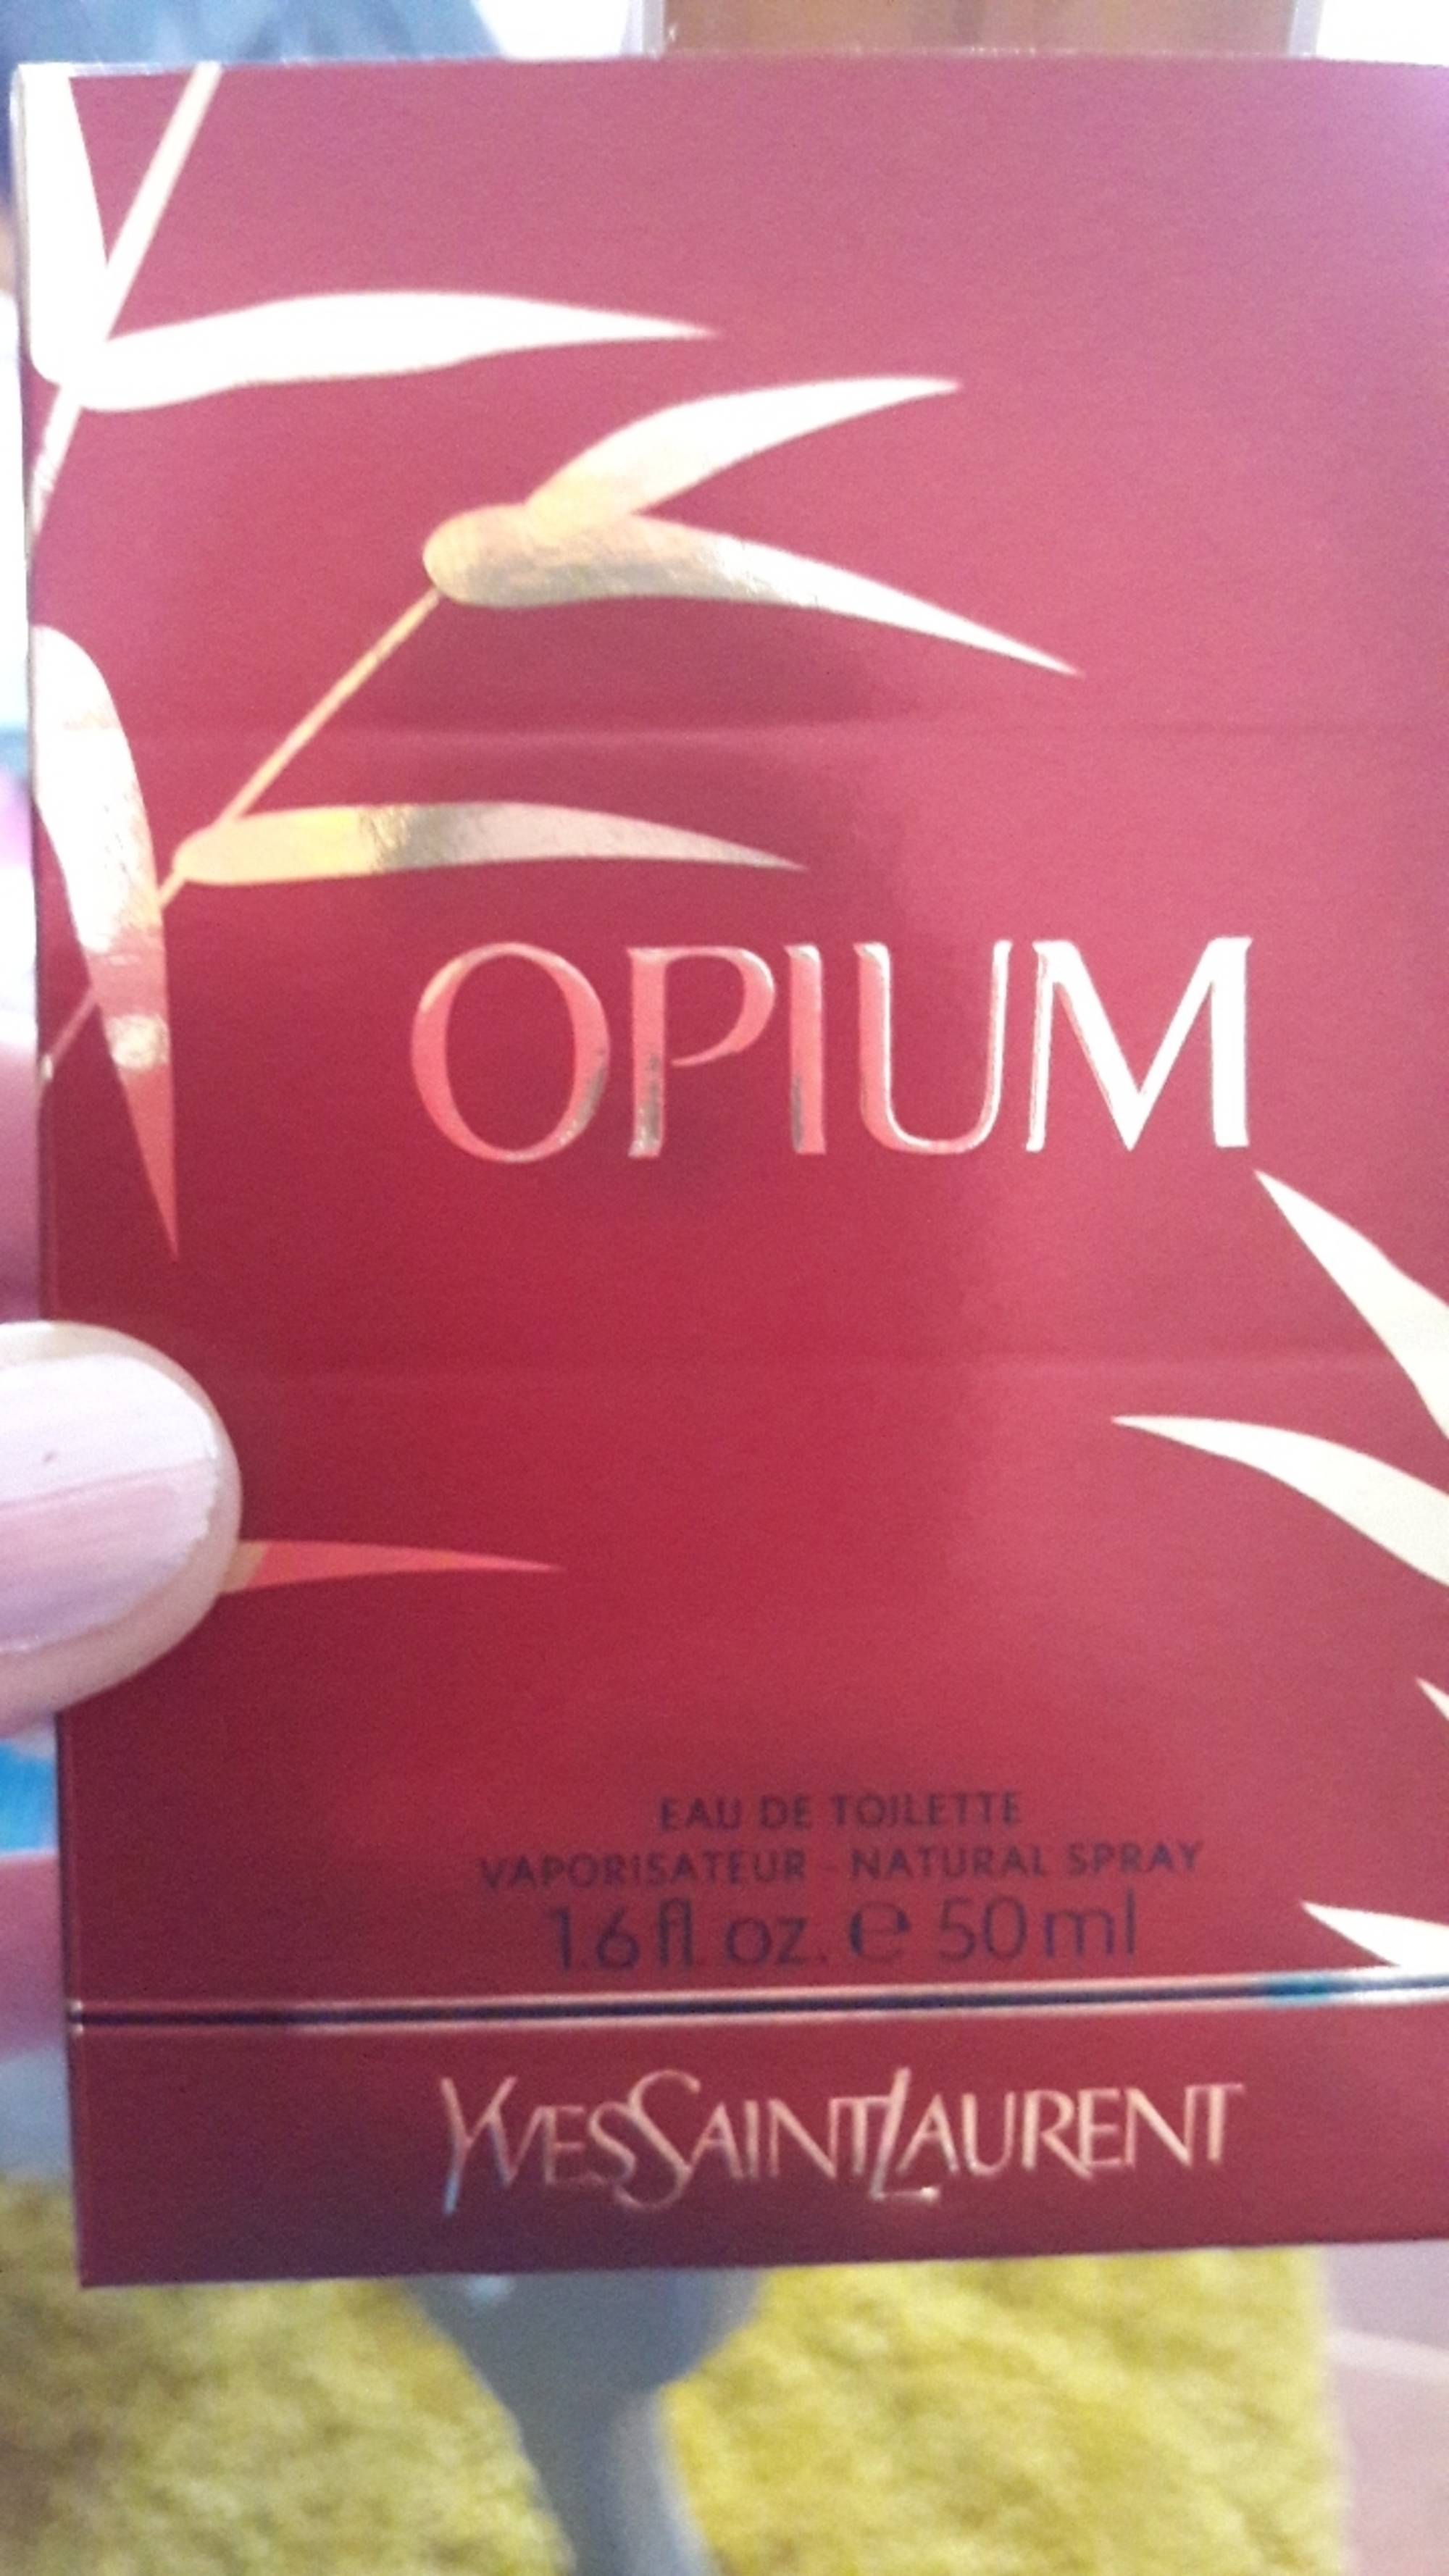 YVES SAINT LAURENT - Opium - Eau de toilette